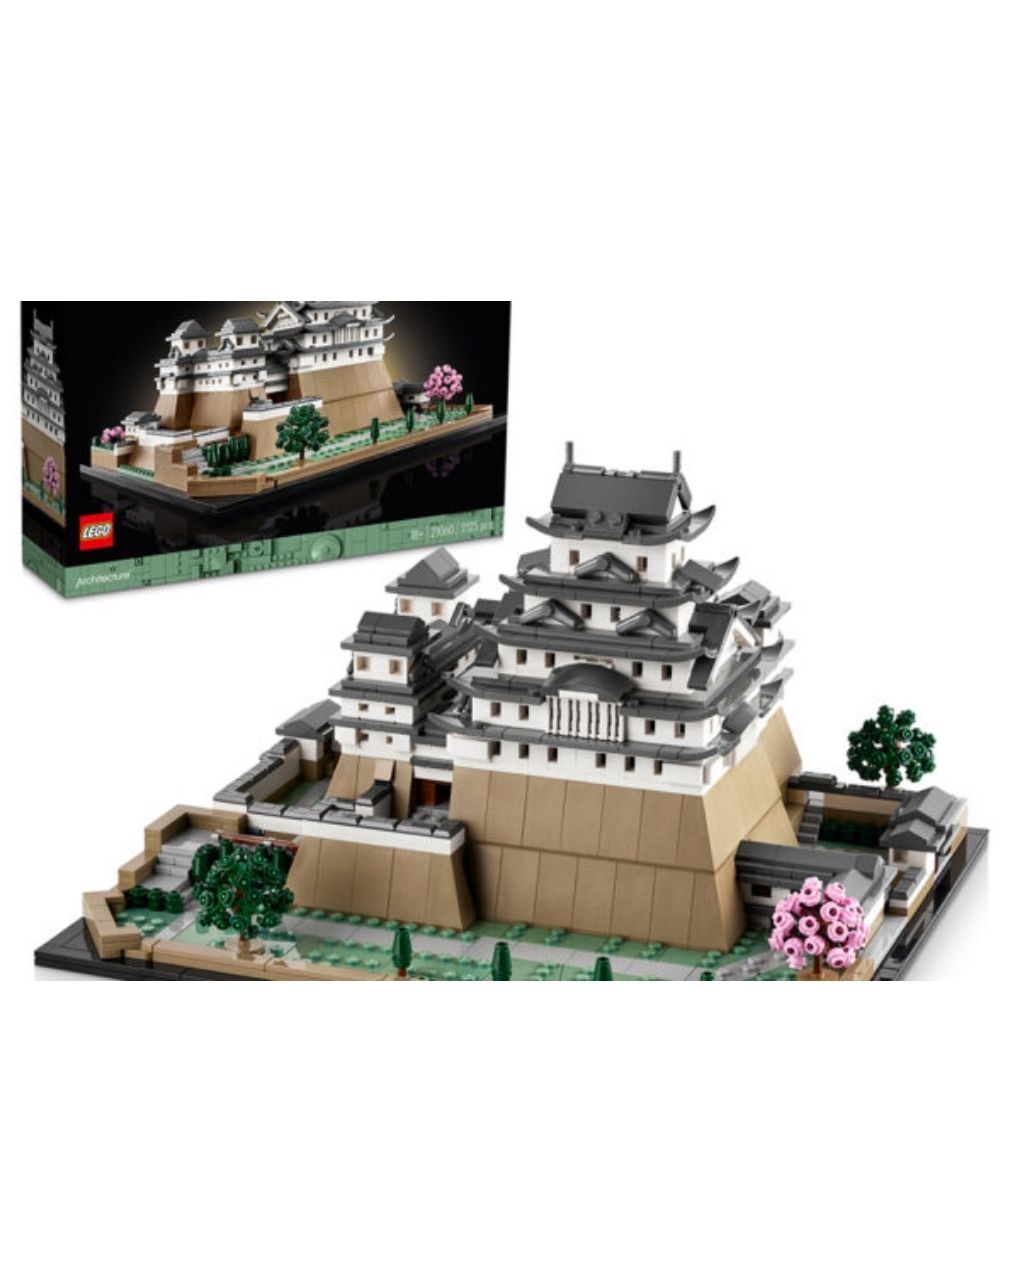 Lego architecture himeji castle 21060 - Lego